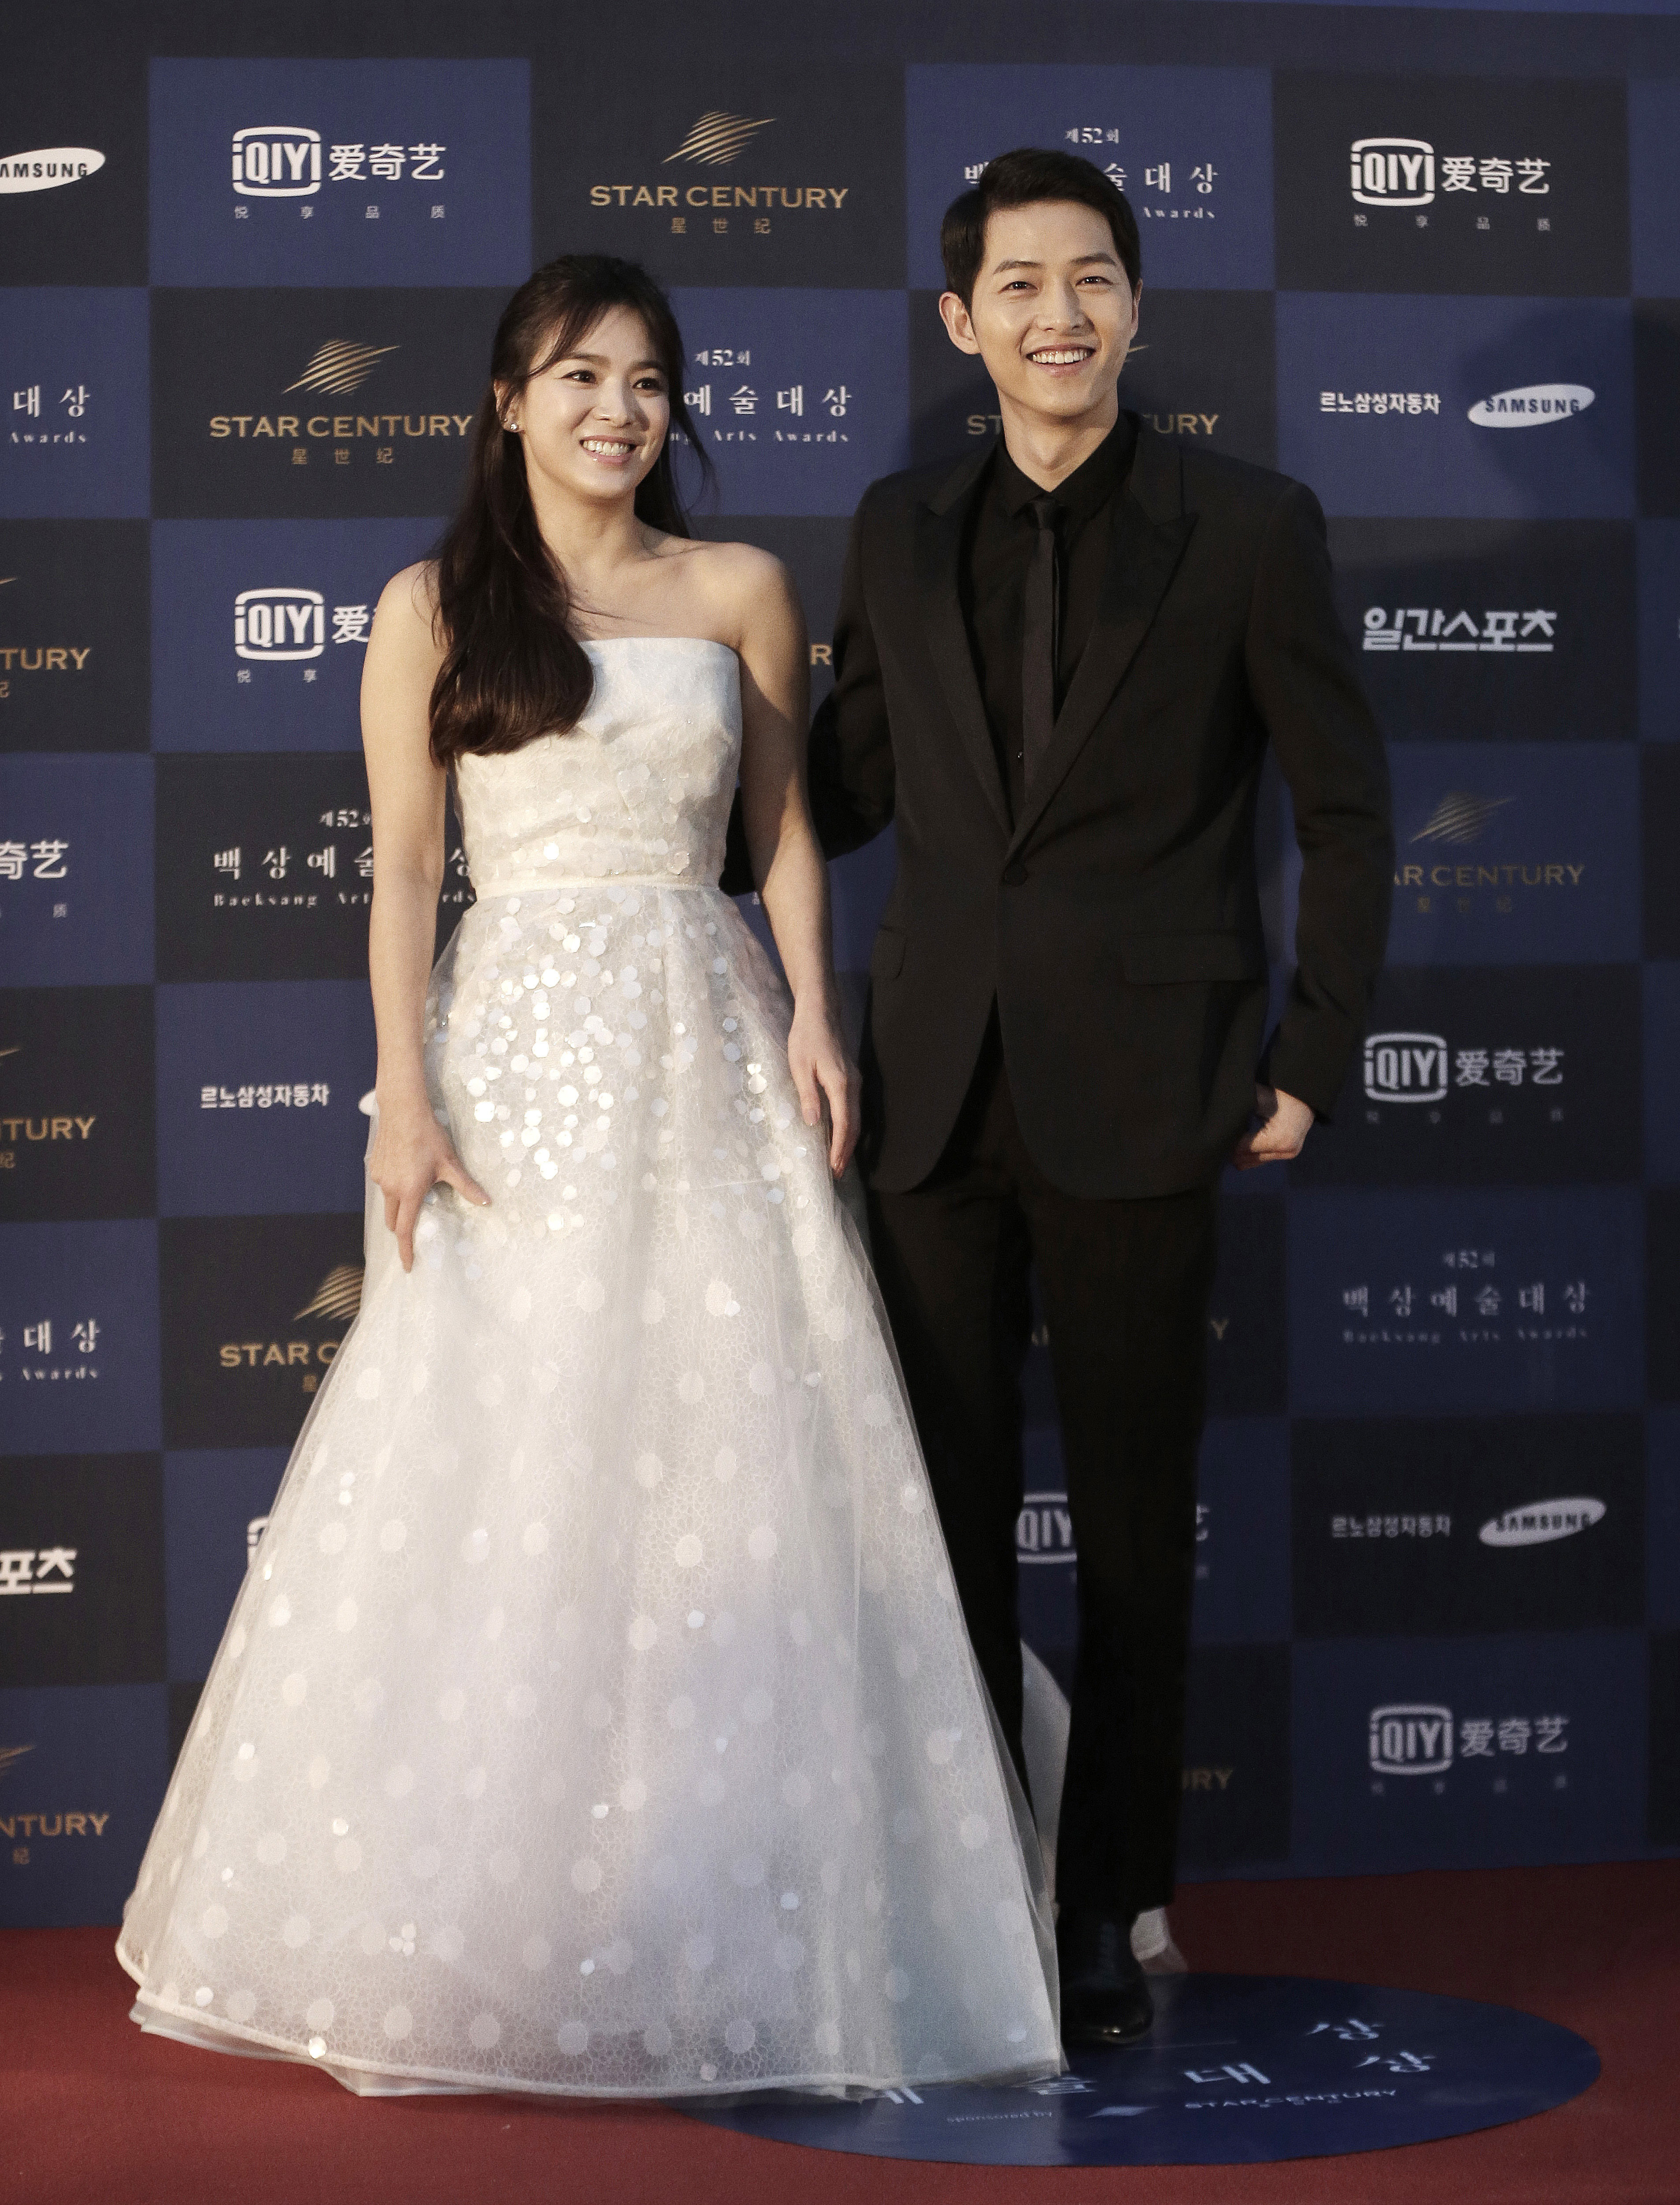 South Korean actress Song Hye-kyo and actor Song Joong-ki